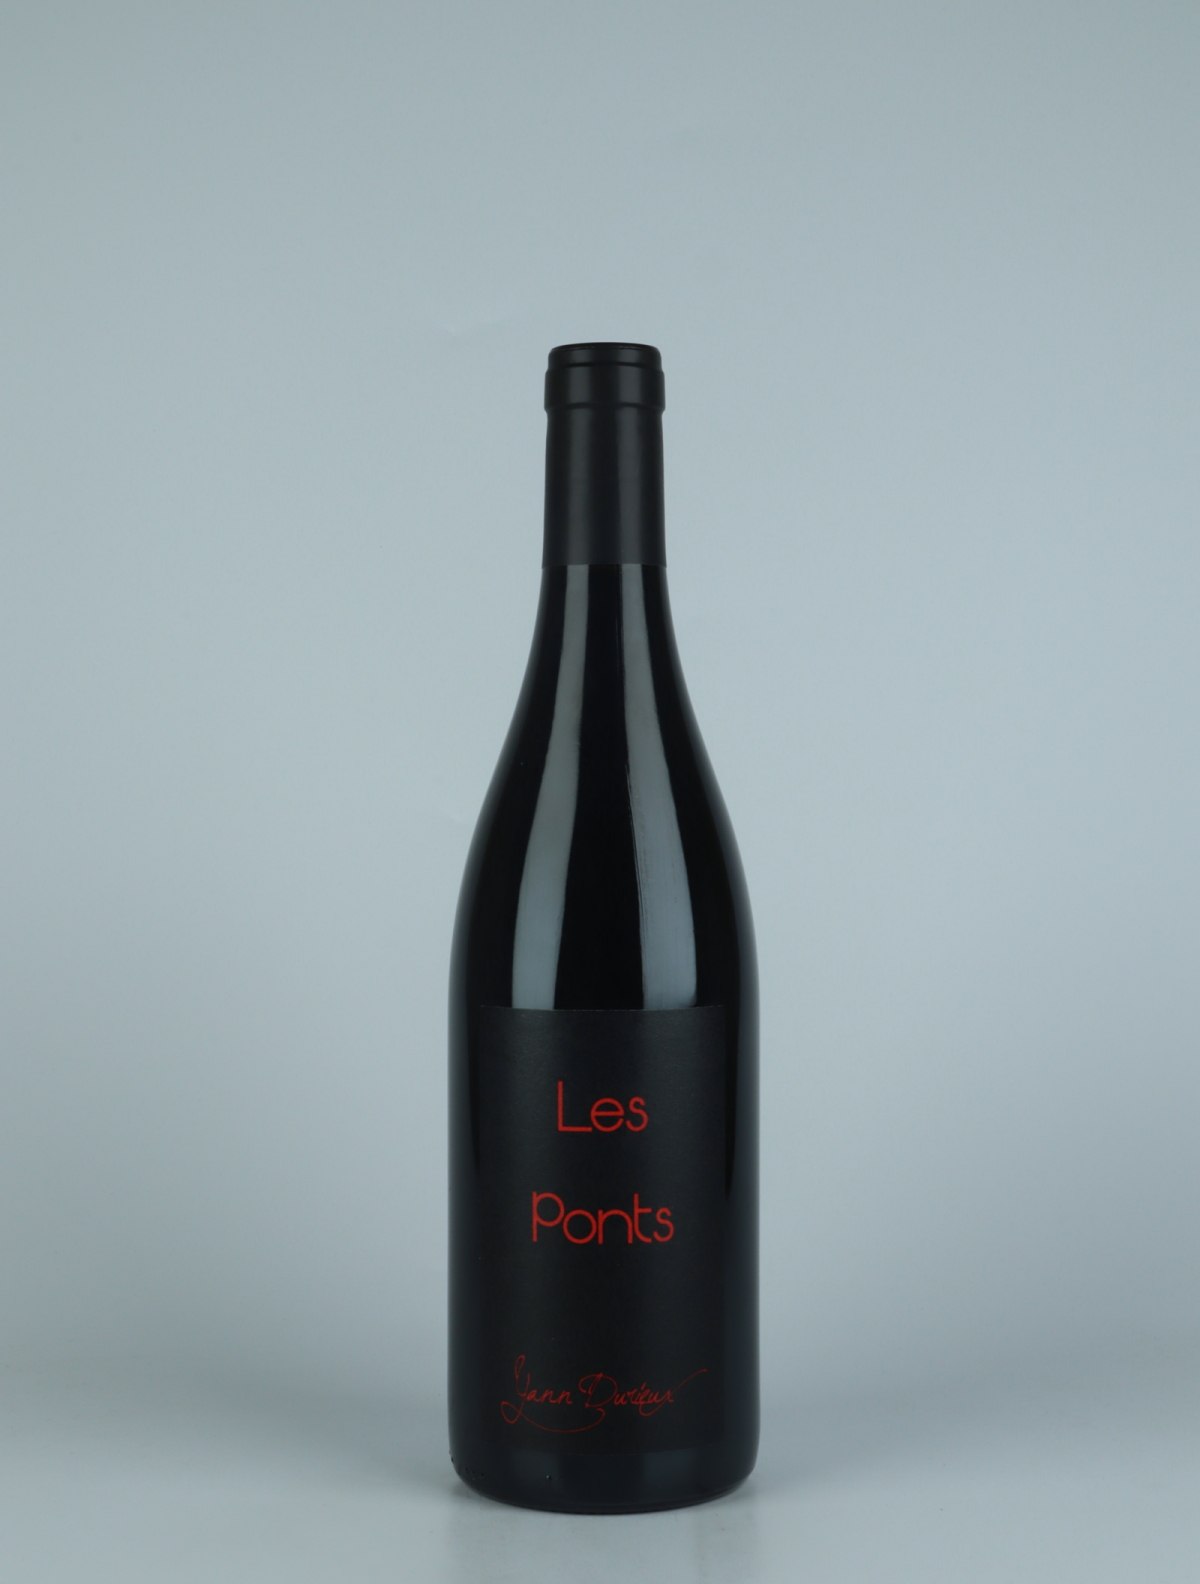 En flaske 2020 Les Ponts Rødvin fra Yann Durieux, Bourgogne i Frankrig